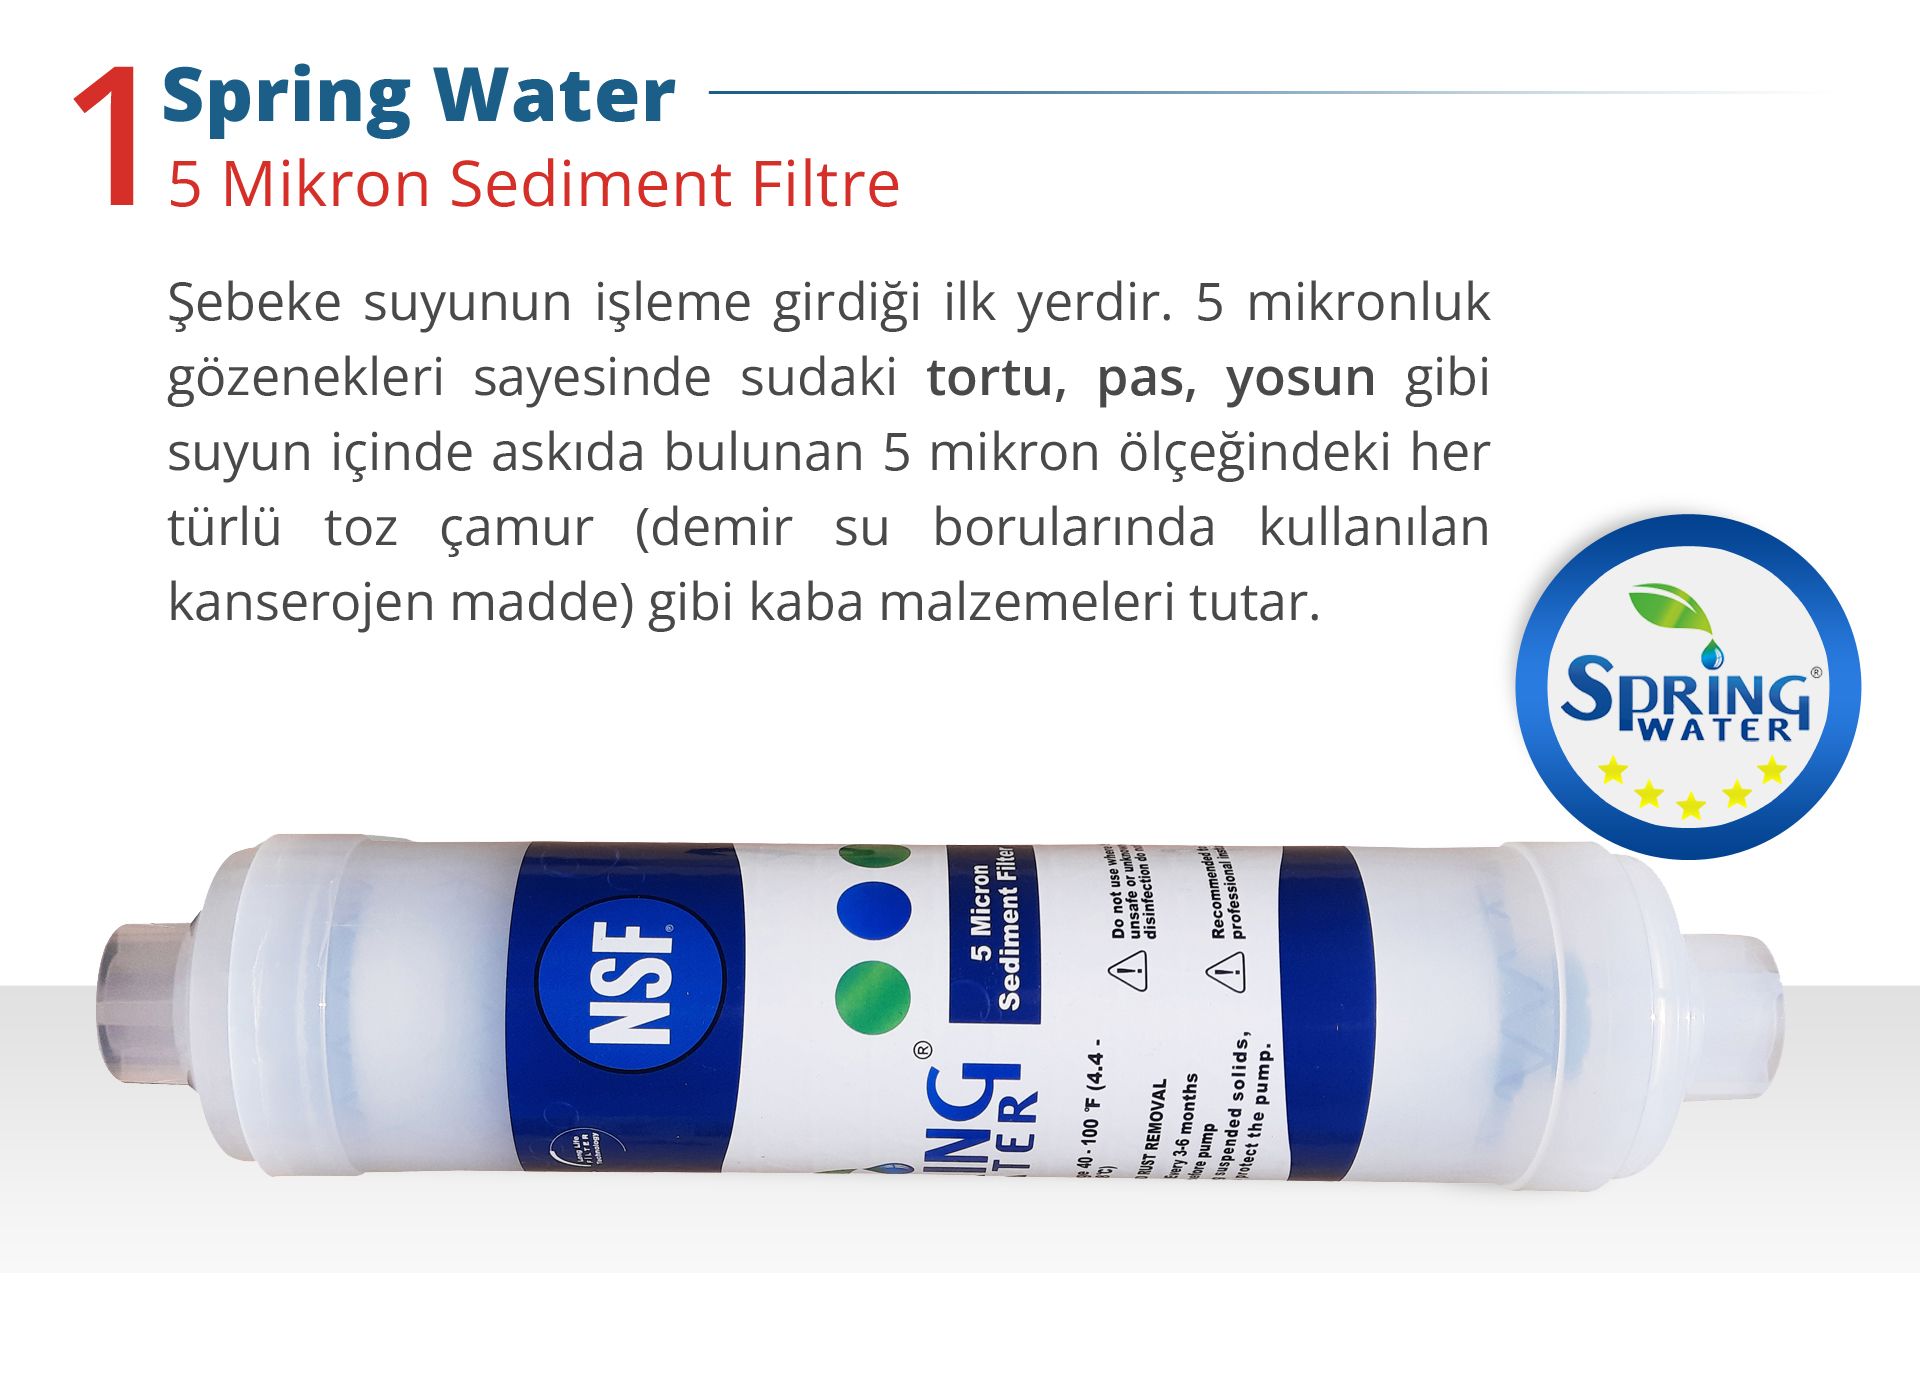 Spring Water Sediment Filtre: Şebeke suyunun işleme girdiği ilk yerdir. 5 mikronluk gözenekleri sayesinde suda ki tortu, pas, yosun gibi suyun içinden askıda bulunan 5 mikron ölçeğindeki her türlü toz çamur gibi kaba malzemeleri tutar.